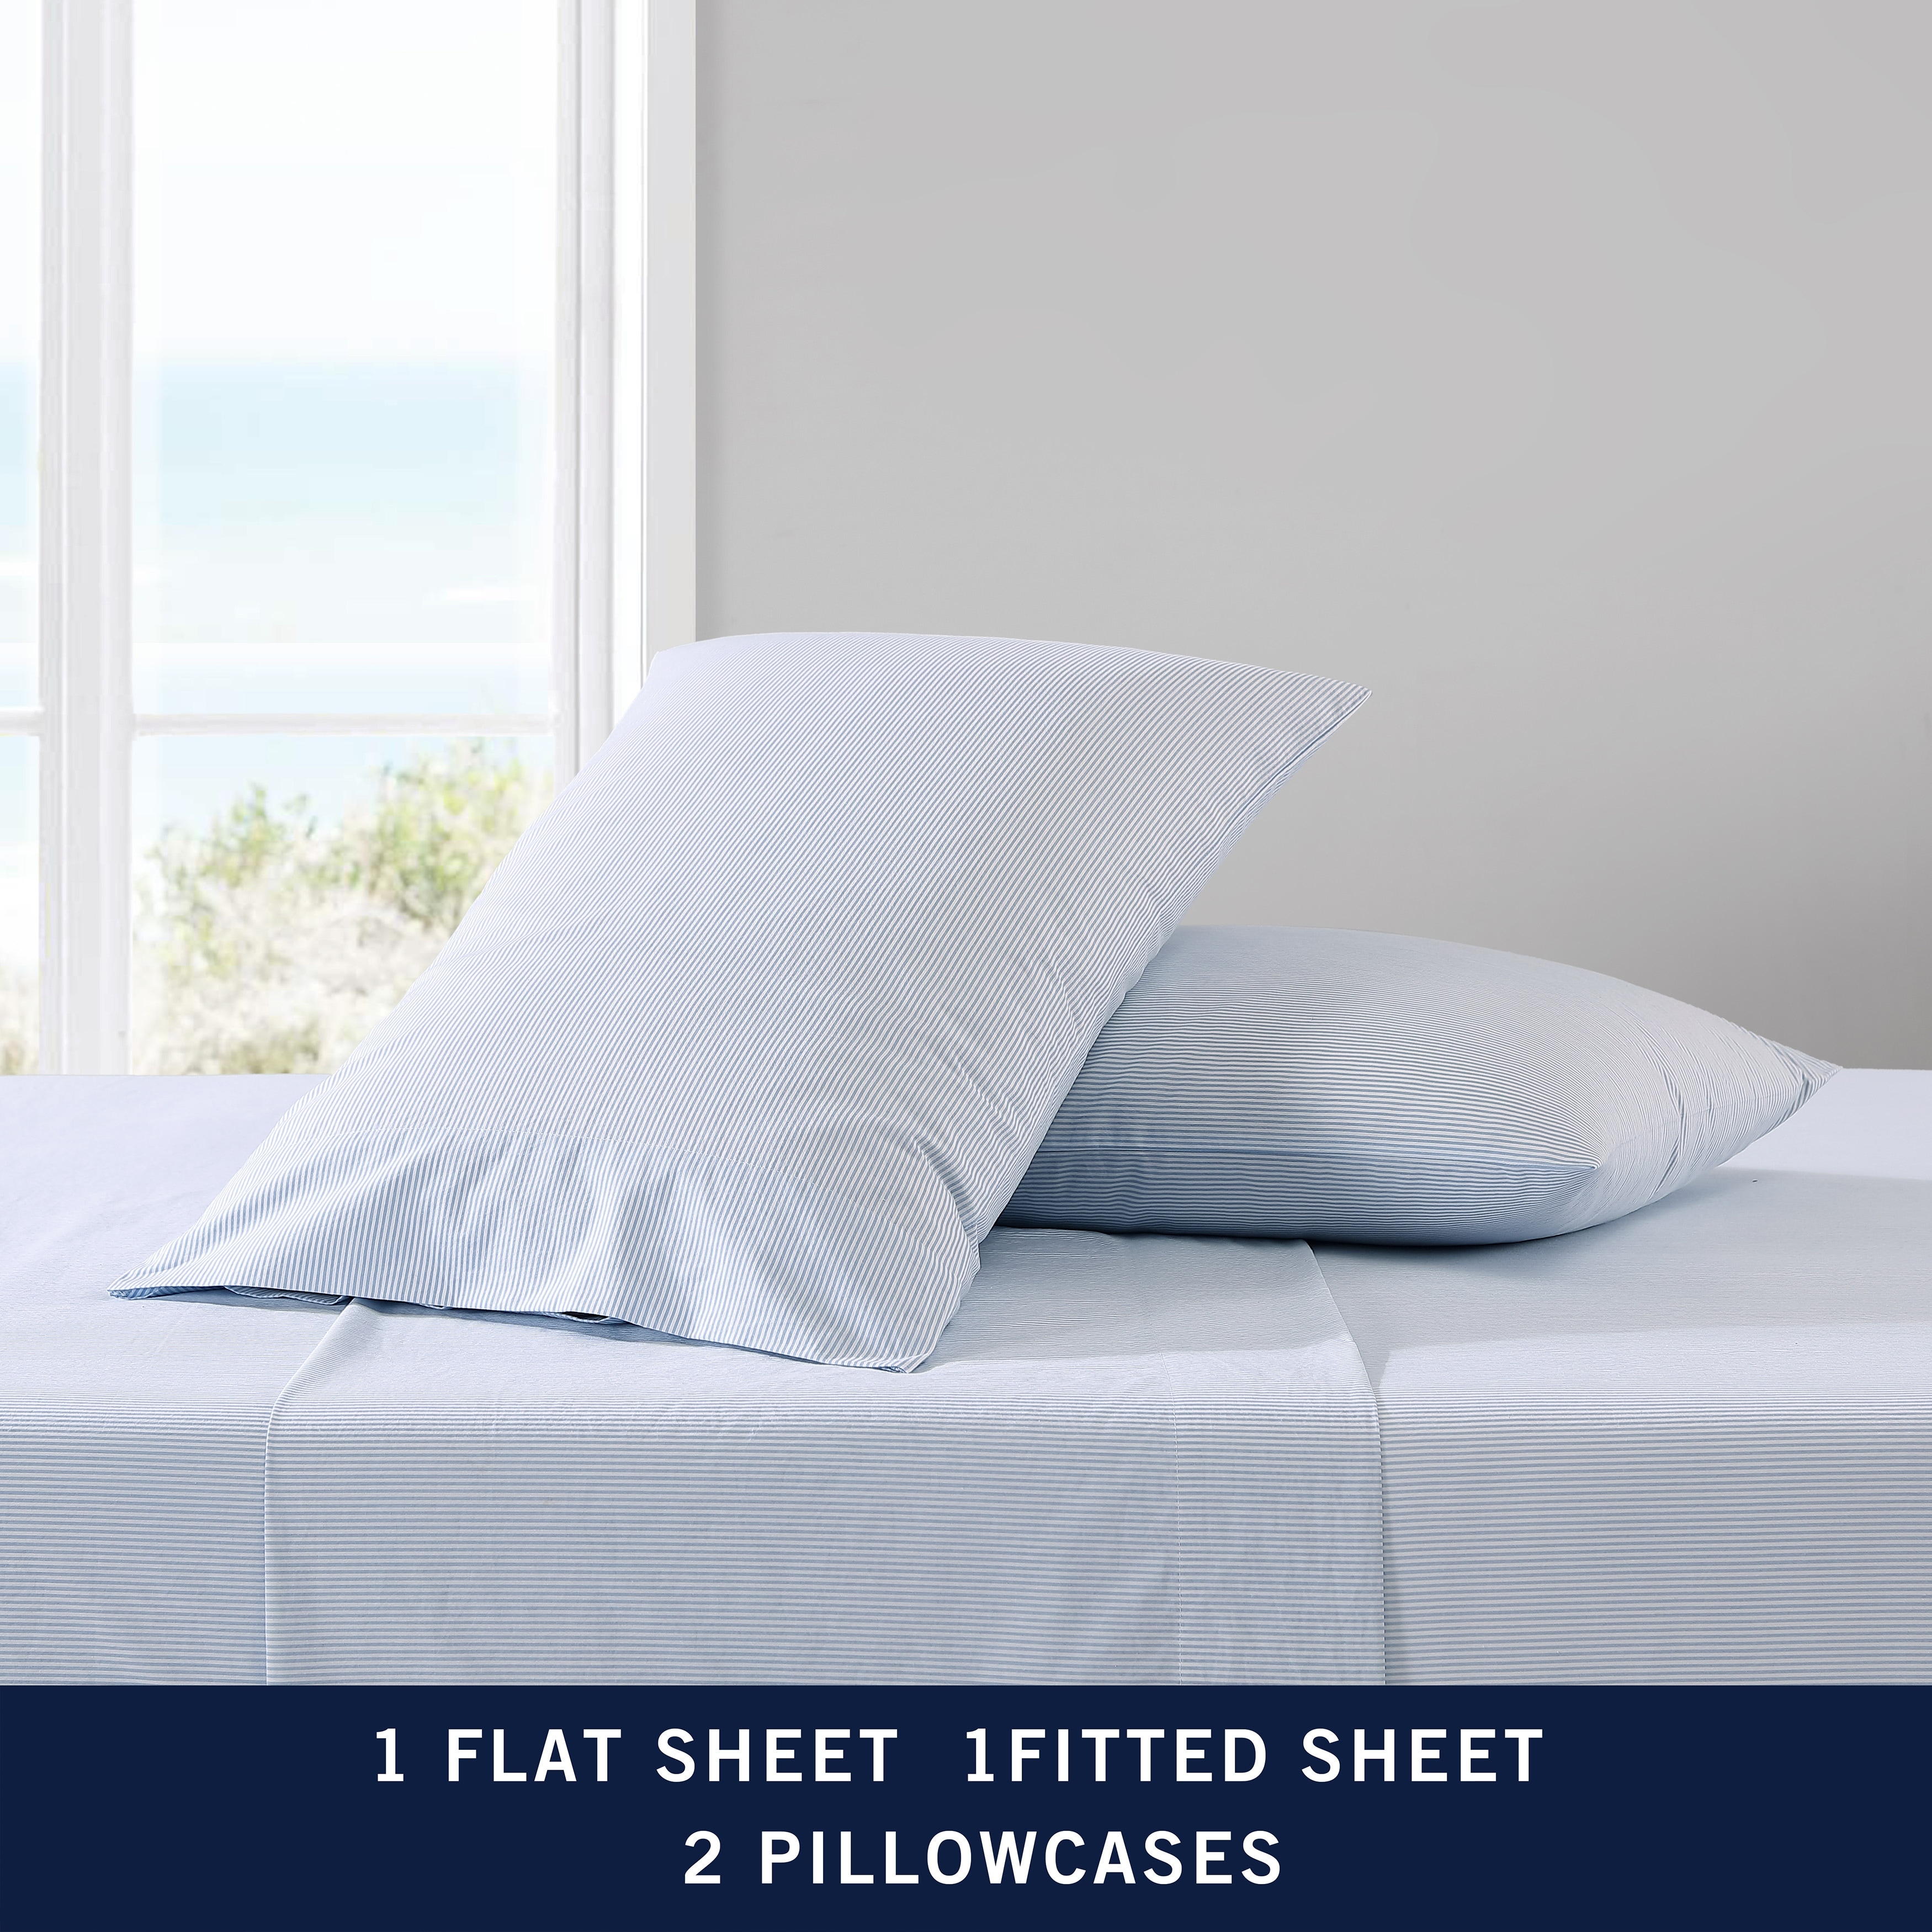 Nautica Belle Haven 6-Piece Towel Set in Moorings Grey (As Is Item) - Bed  Bath & Beyond - 26267008